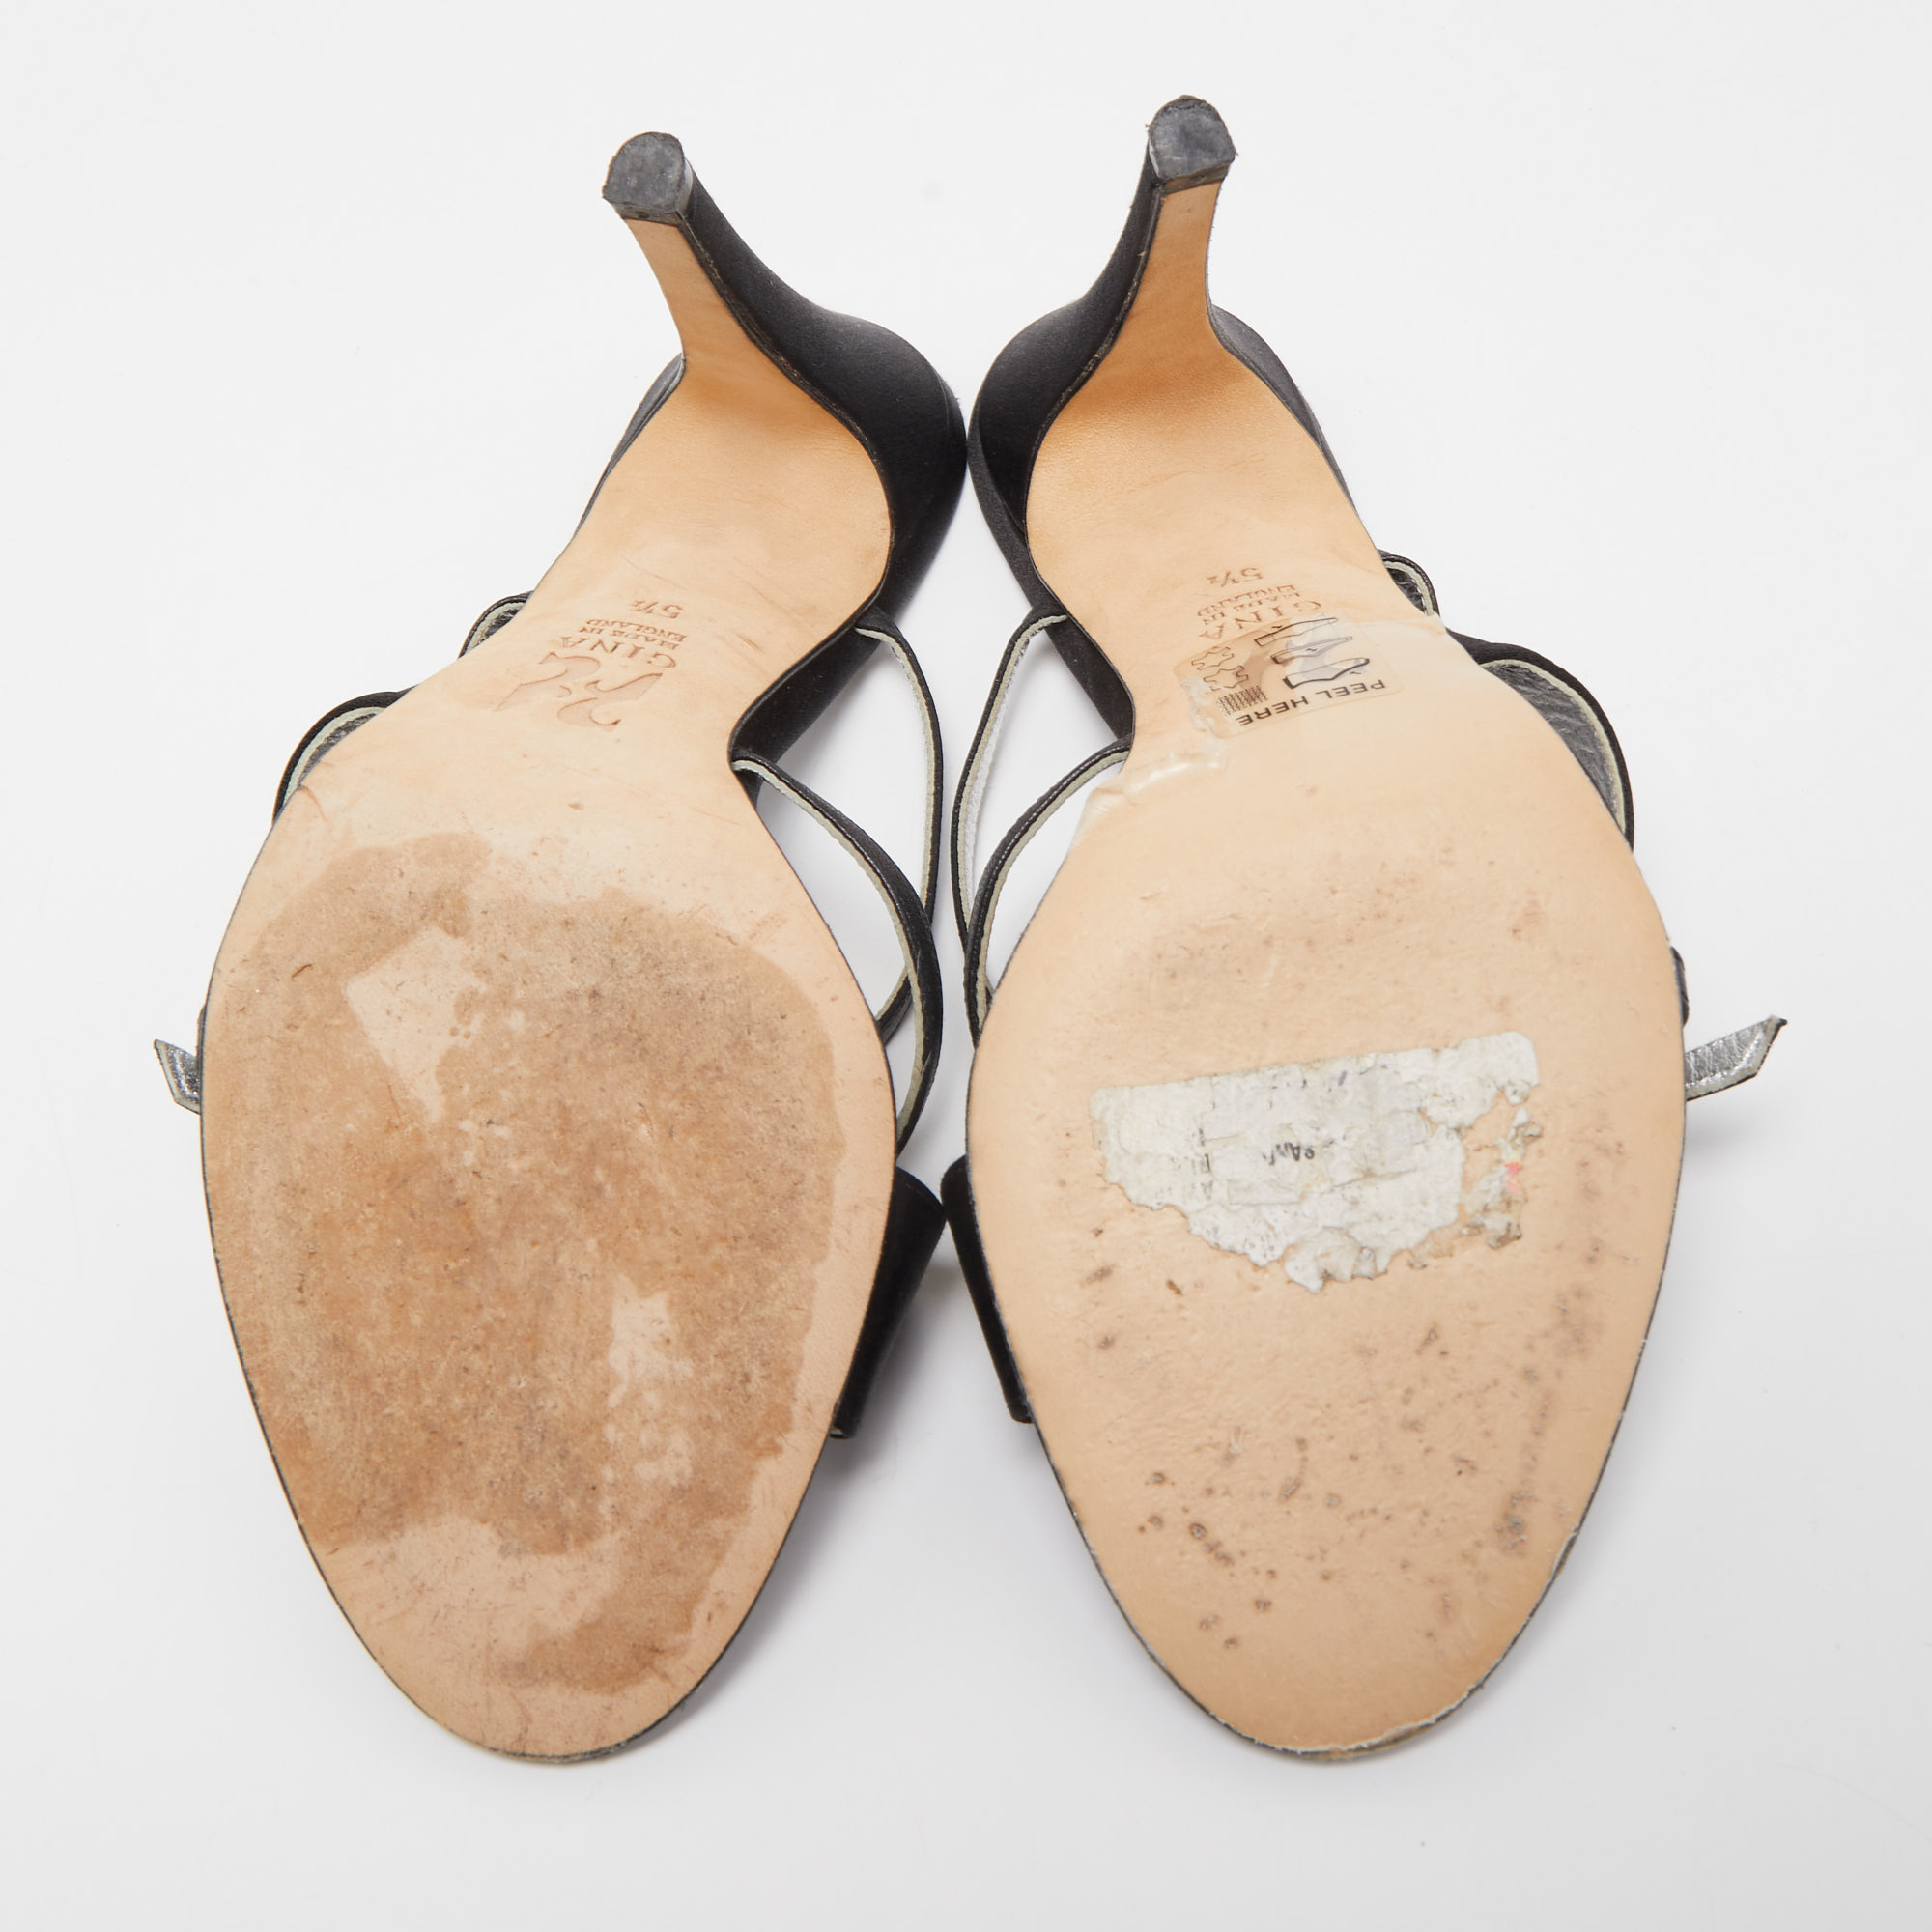 Gina Black Satin Crystal Embellished Cross Strap Slides Sandals Size 38.5